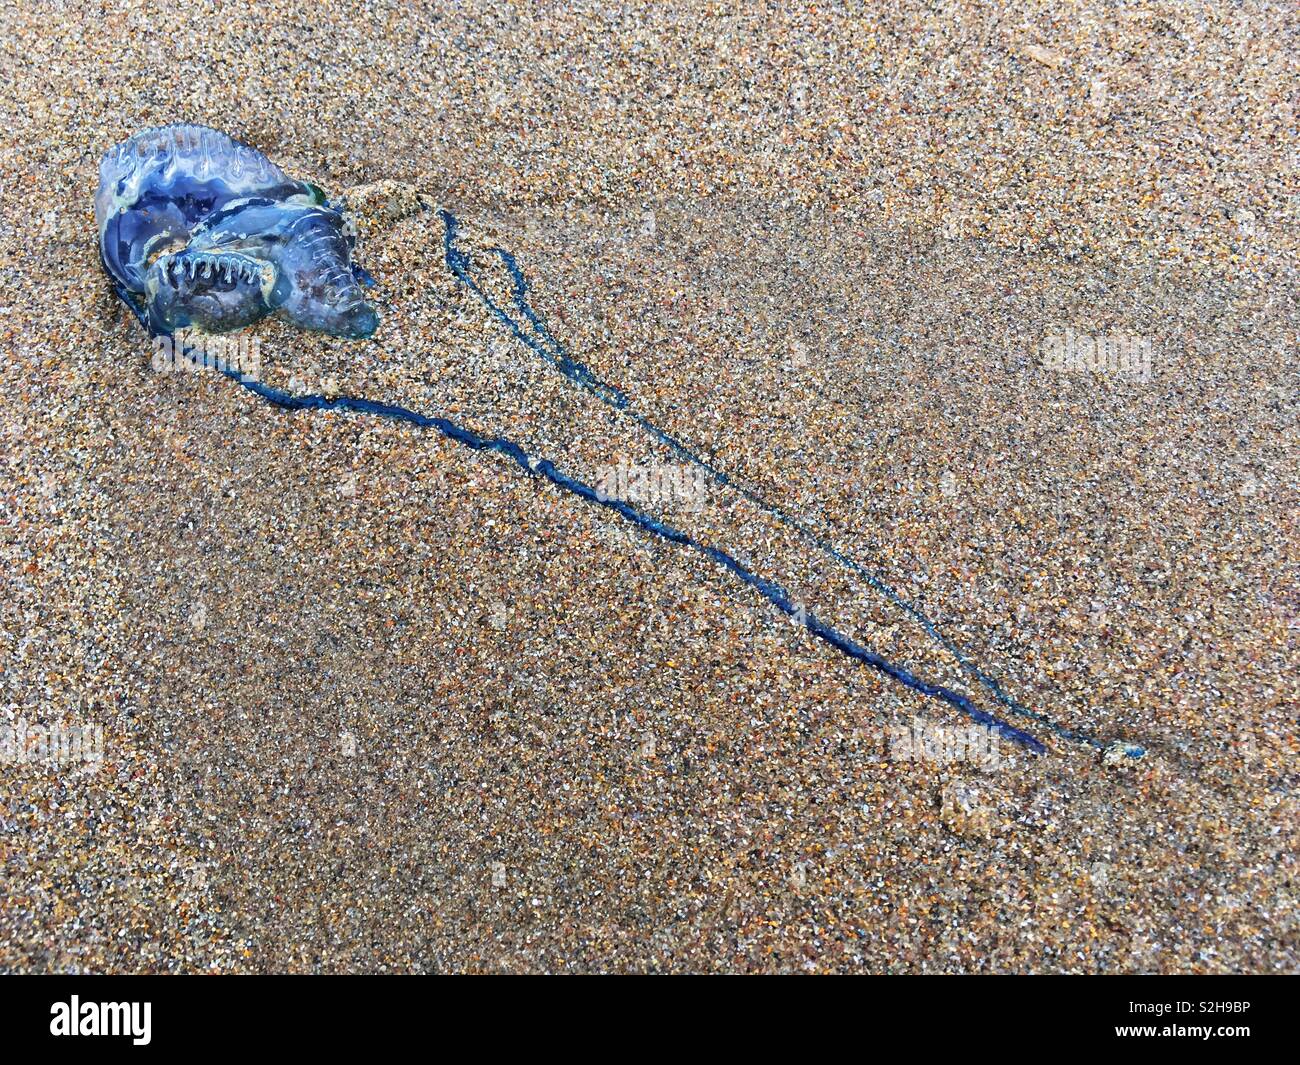 Un bluebottle, noto anche come il portoghese uomo di guerra si trova lavato fino a Durban di South Beach. Mentre di solito non letale, queste meduse-like creature possono offrire un angosciante sting. Foto Stock